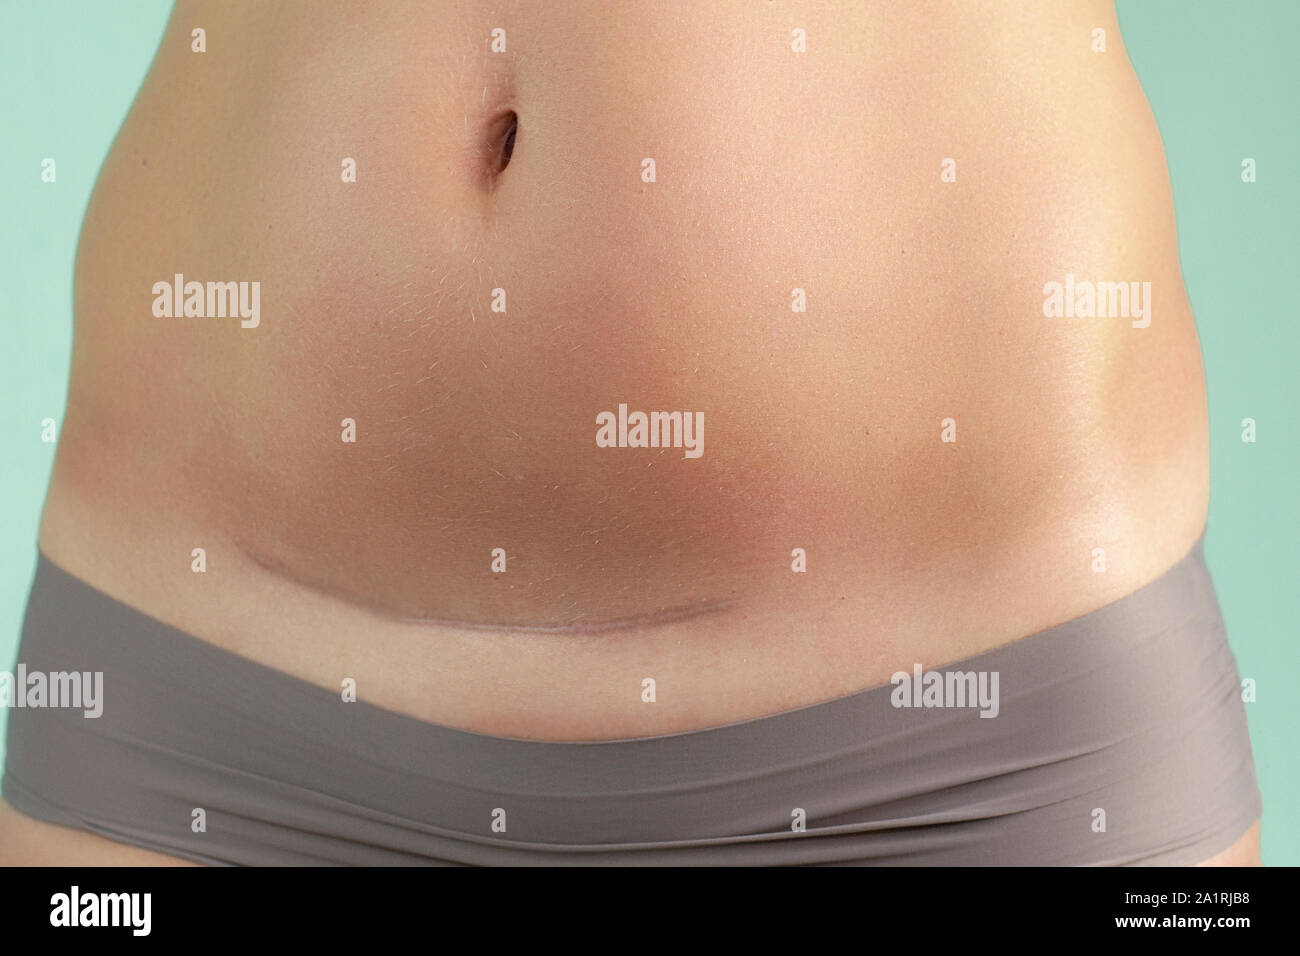 Nahaufnahme von einem Kaiserschnitt Narbe in eine Frau. Gesundheit und  Geburt Stockfotografie - Alamy